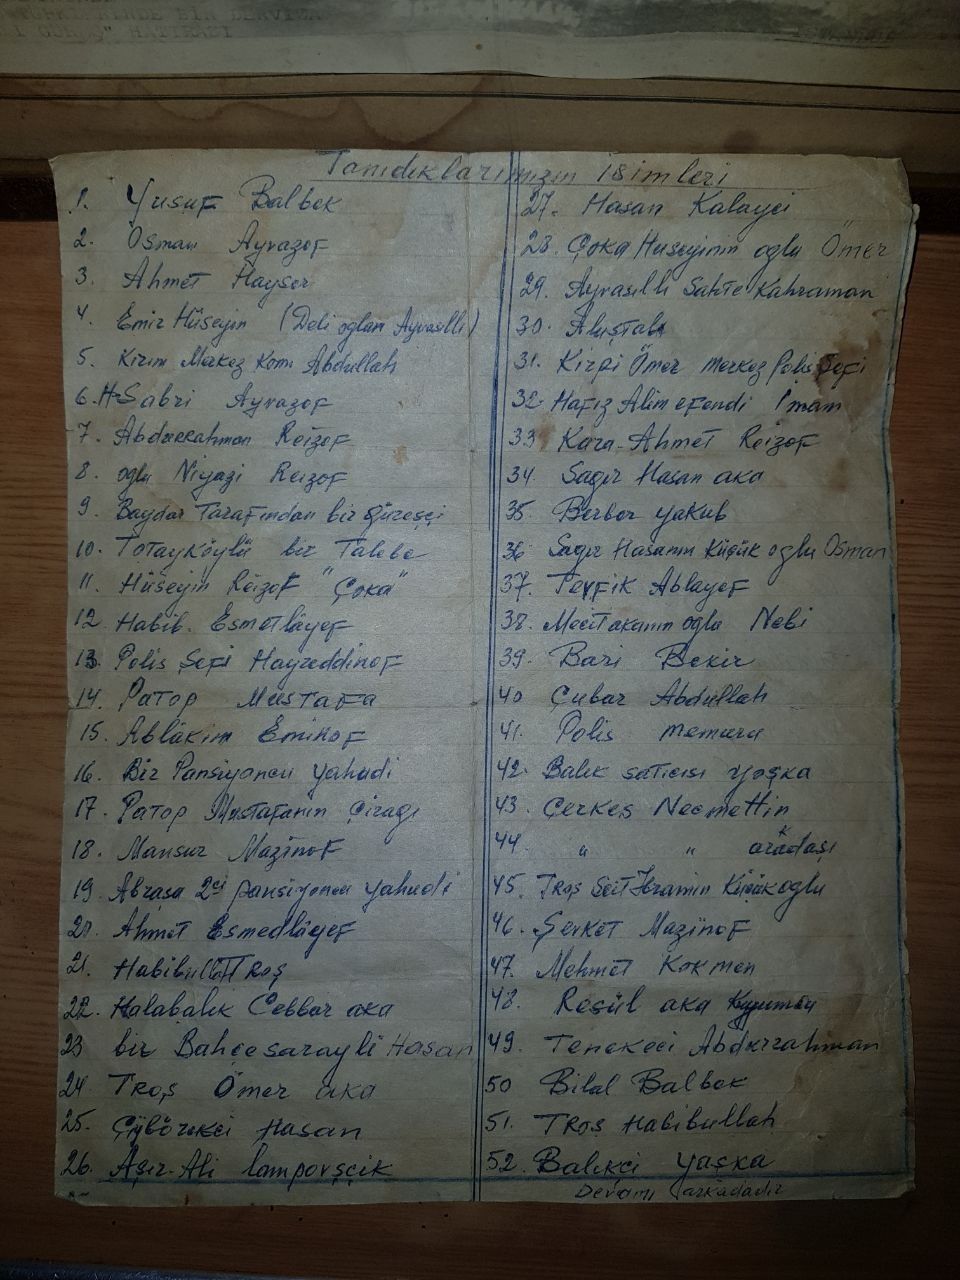 Групповое фото Турки 1926 года с описанием фамилии и имени